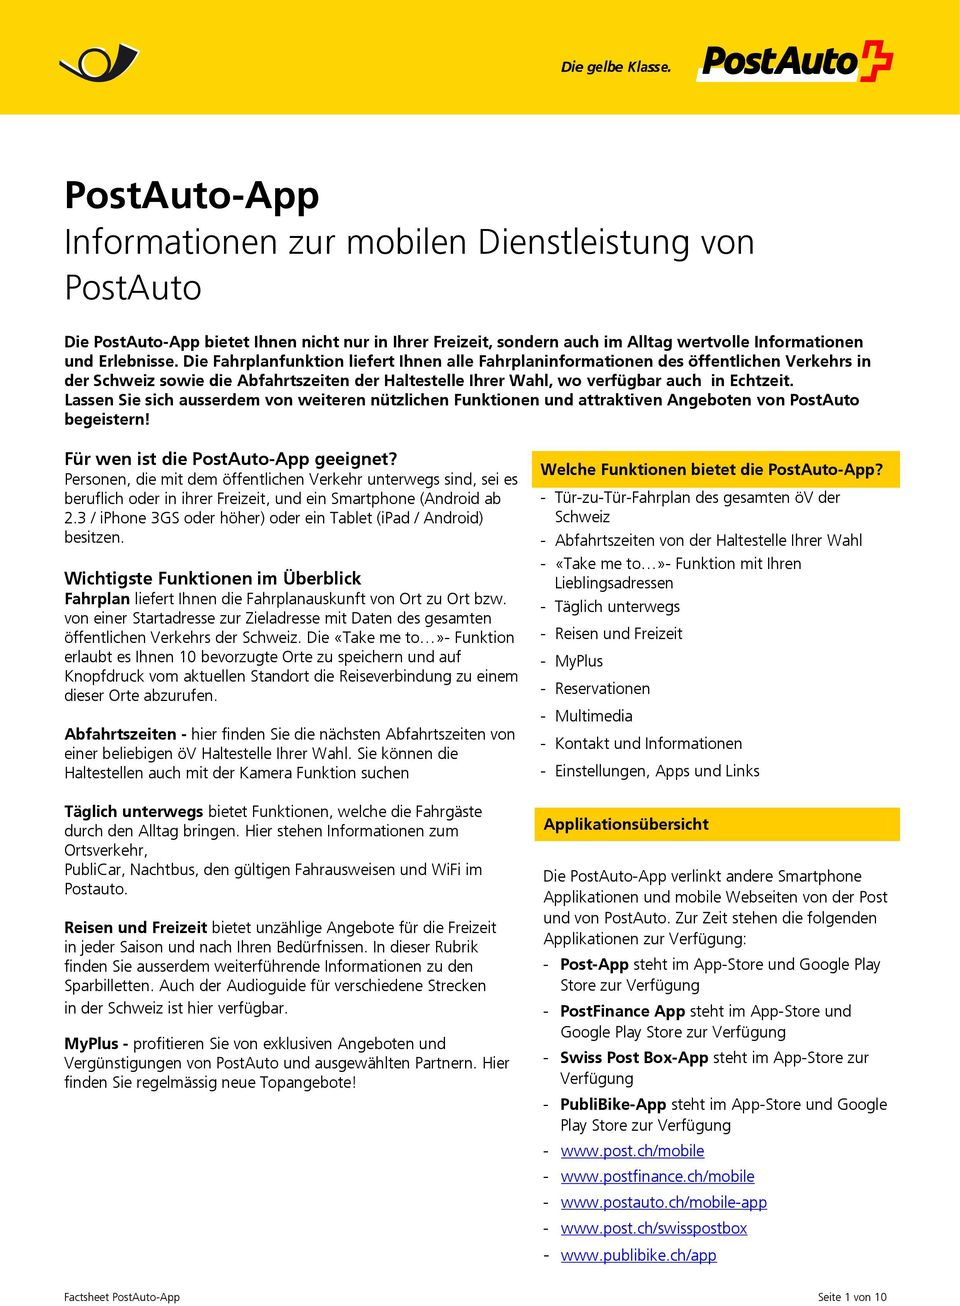 Lassen Sie sich ausserdem von weiteren nützlichen Funktionen und attraktiven Angeboten von PostAuto begeistern! Für wen ist die PostAuto-App geeignet?